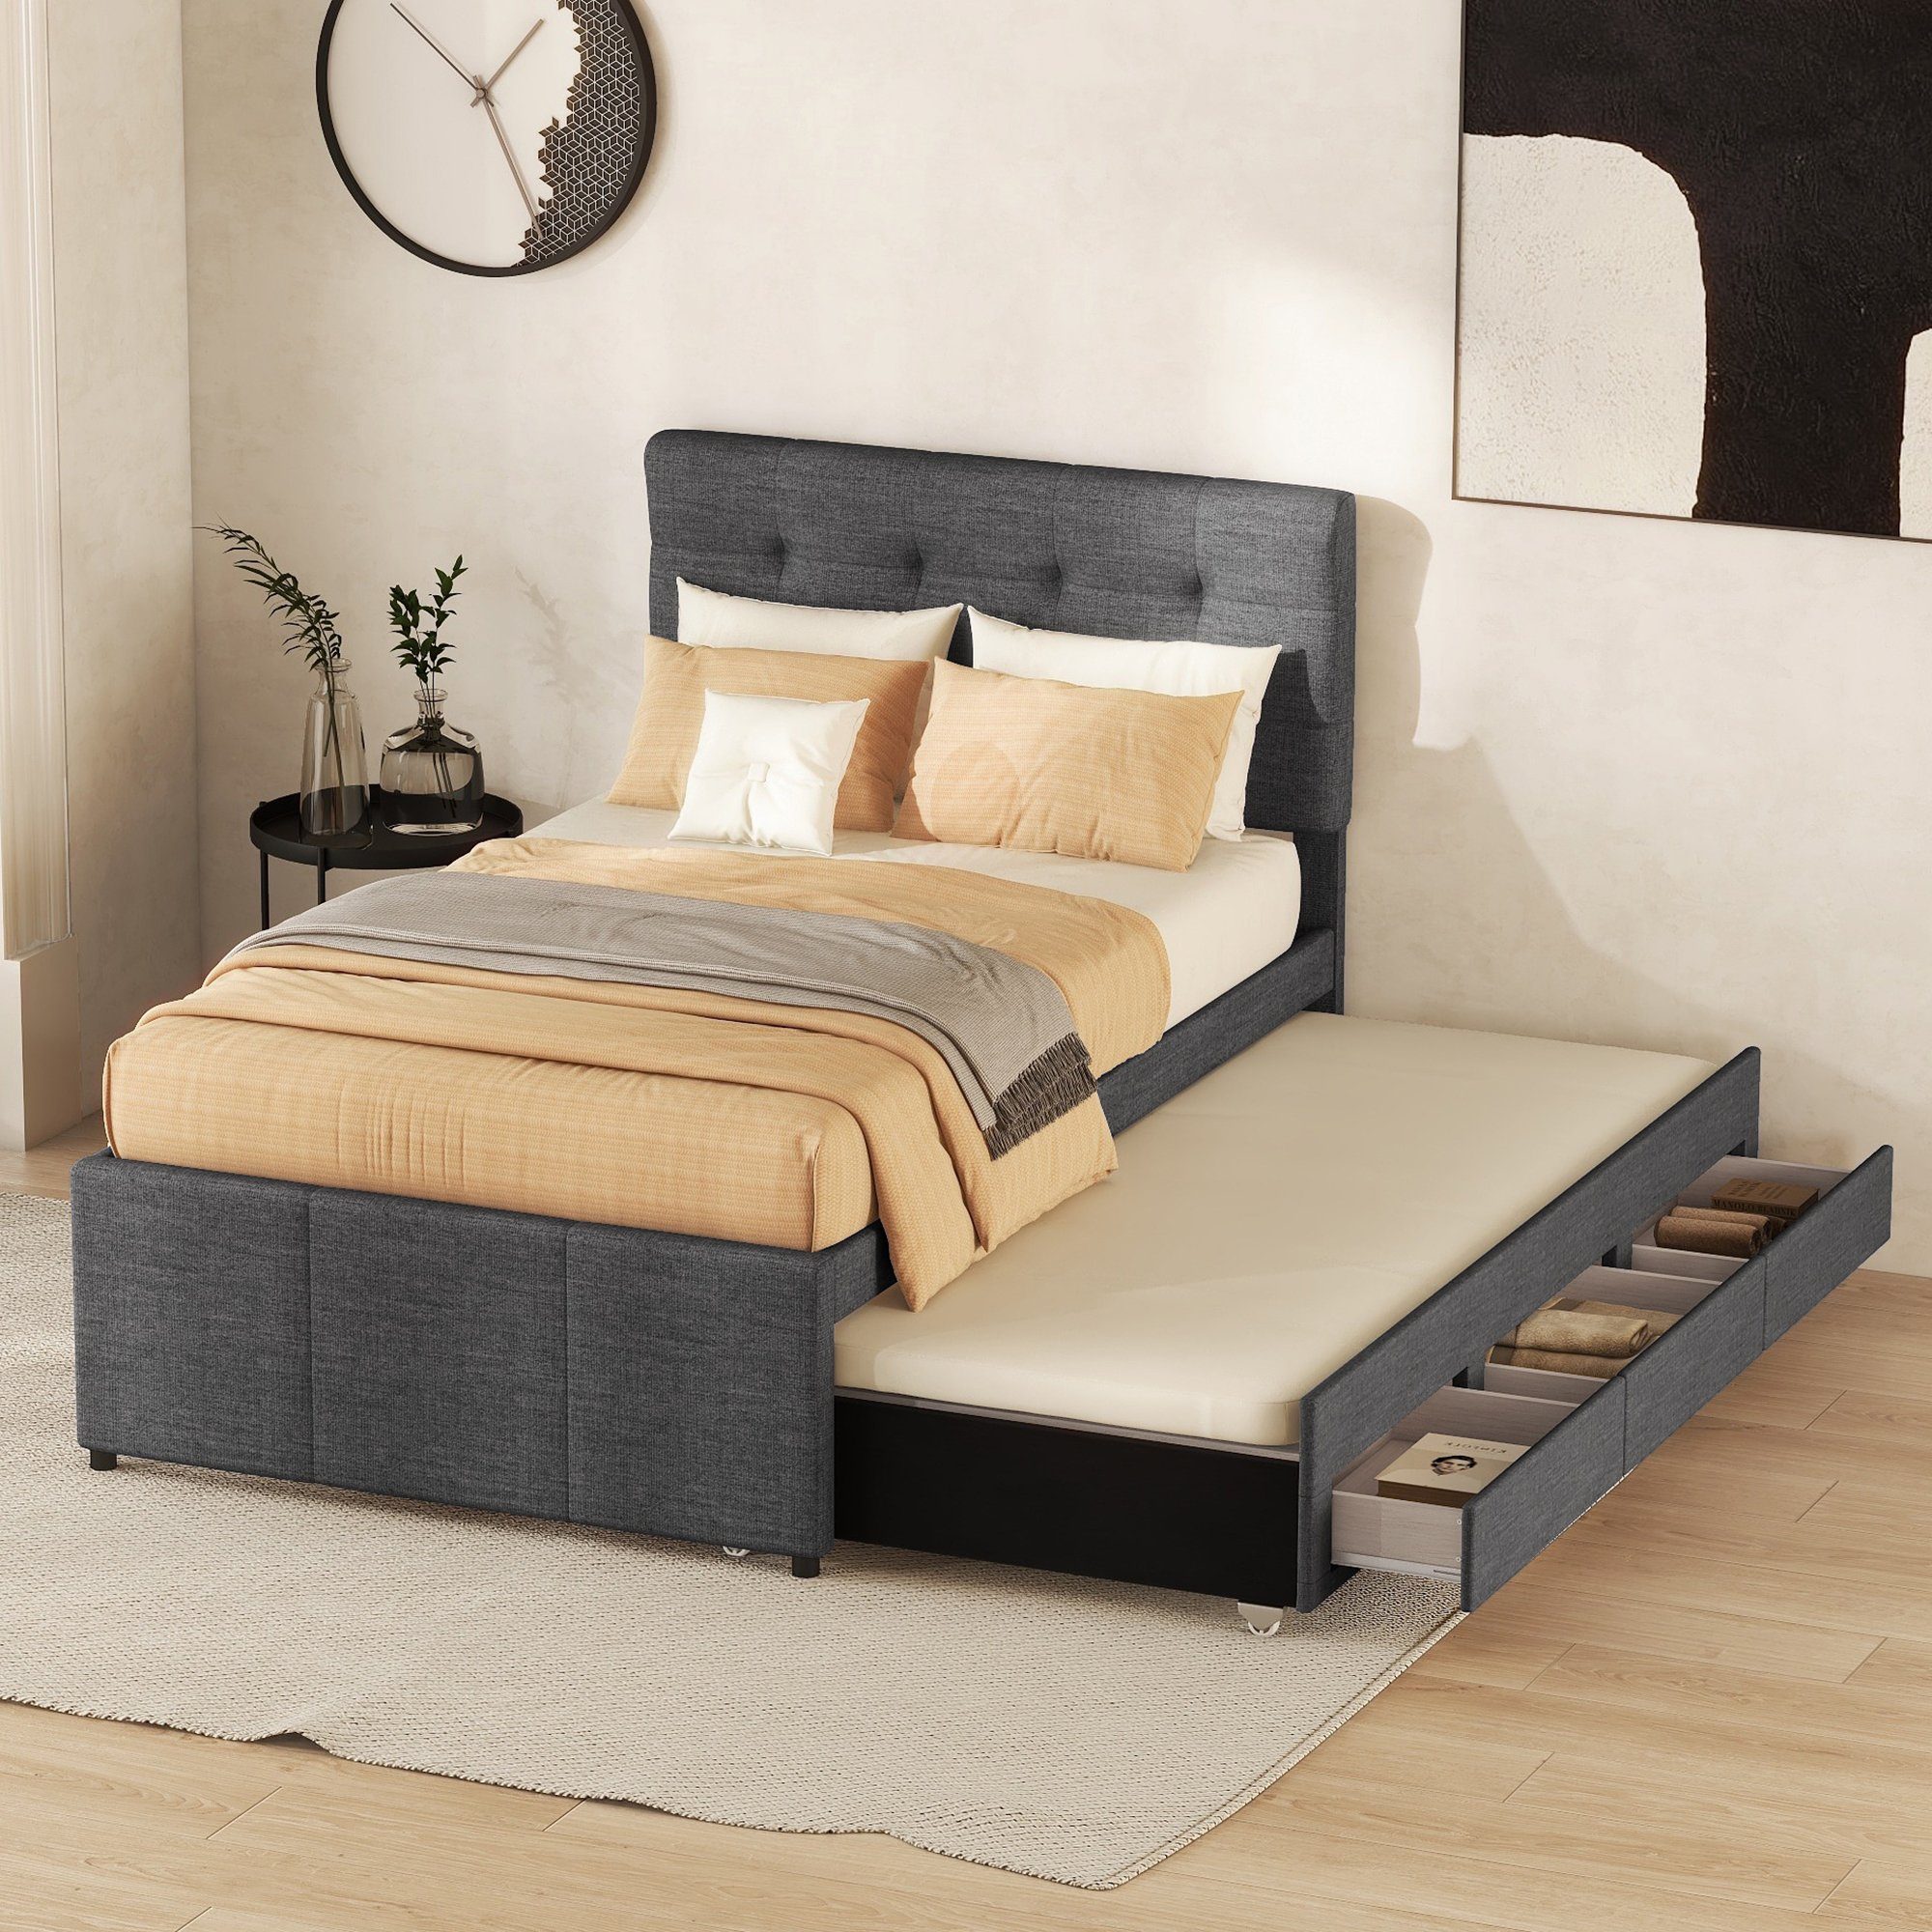 Ulife Polsterbett Doppelbett ausziehbares Bett Familienbett, Verstellbares Kopfteil, mit drei Schubladen, 90 x 200 cm